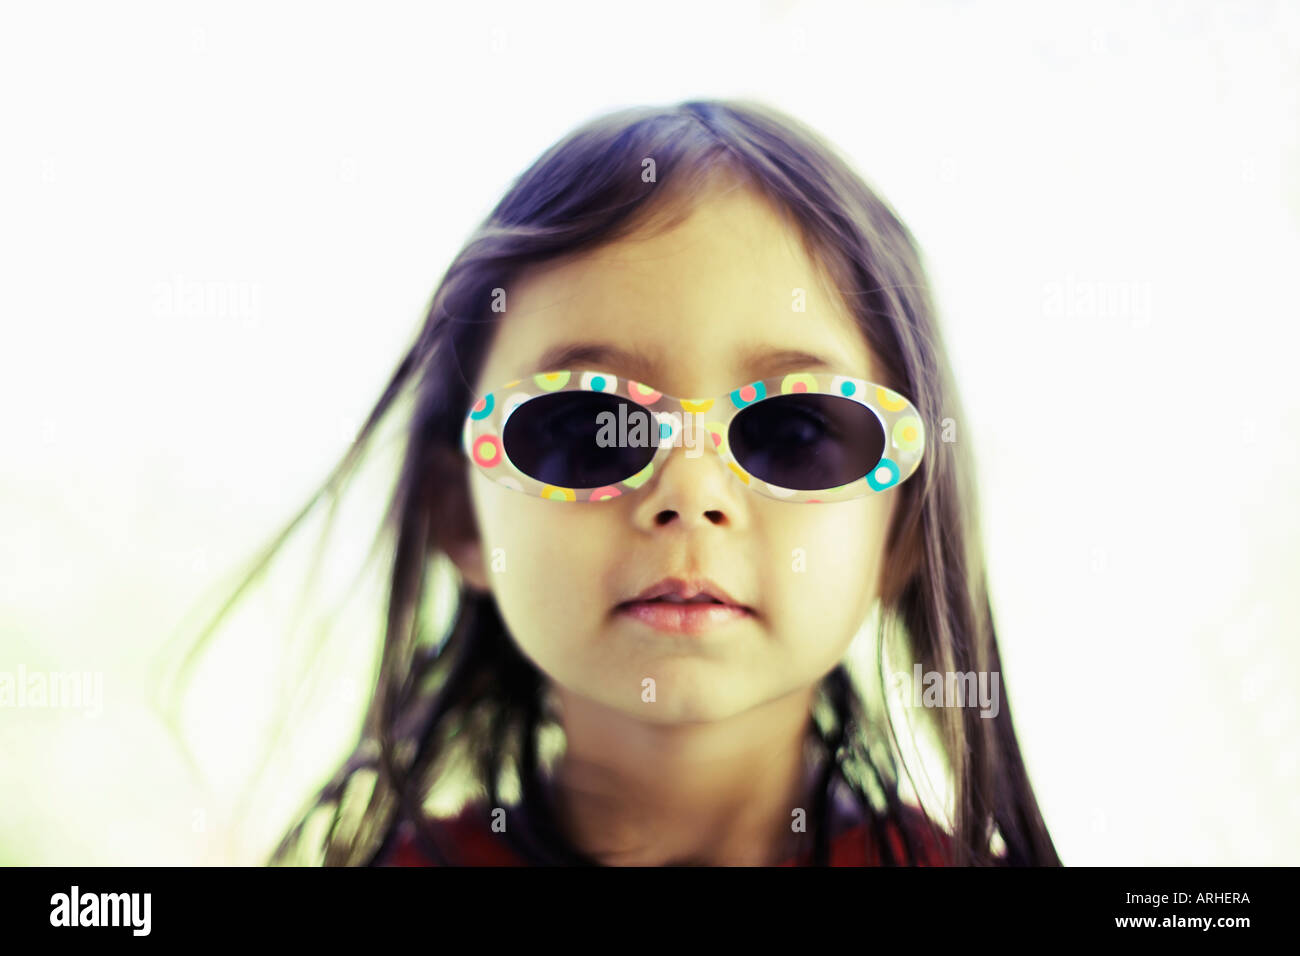 Head and shoulders portrait de petite fille portant des lunettes de soleil style 50s Banque D'Images